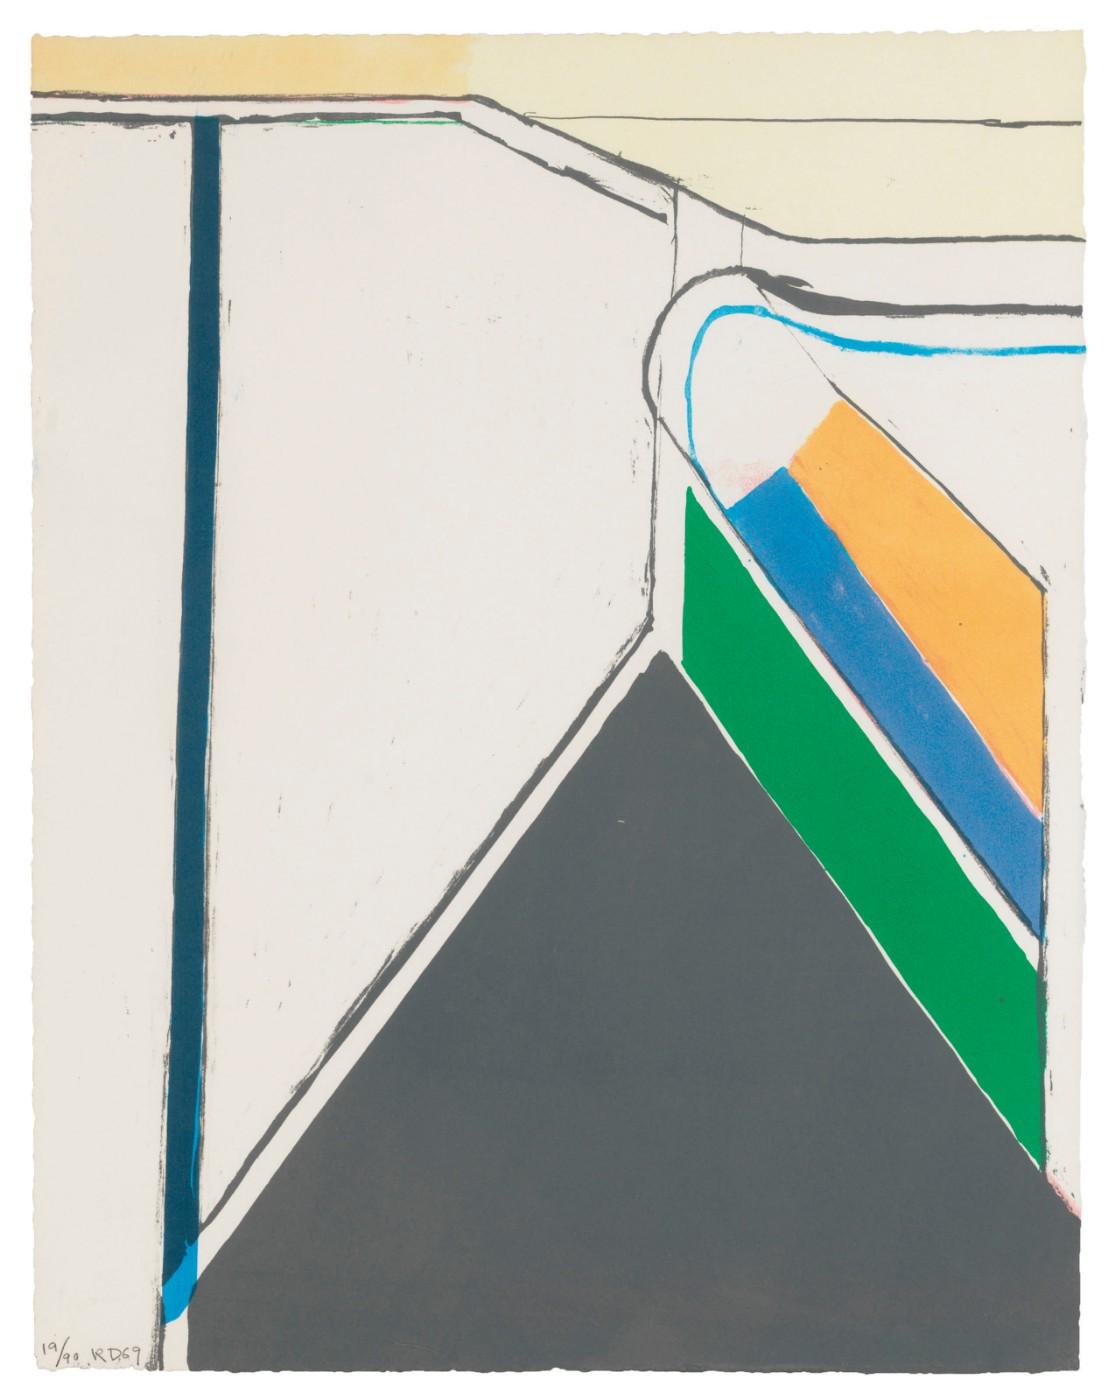 Richard Diebenkorn (1922-1993), Untitled (Ocean Park), 1969